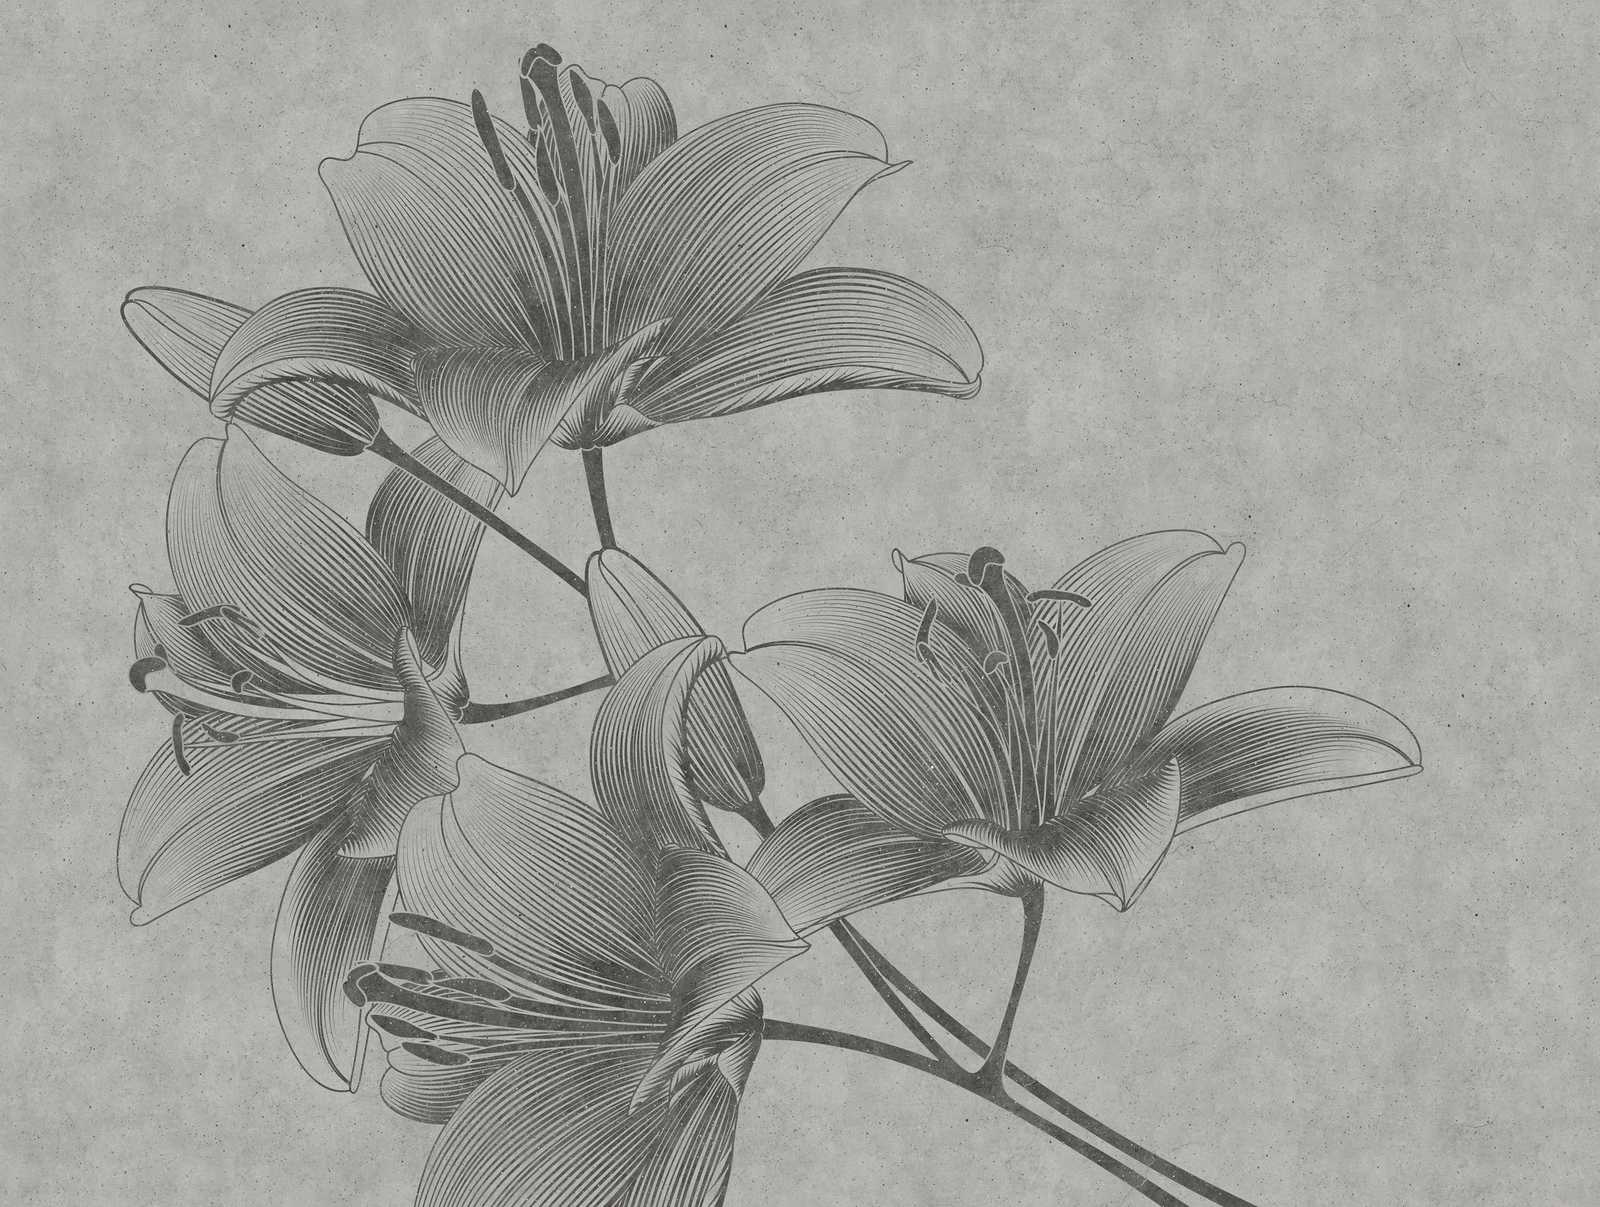             Behang nieuwigheid | grijs bloemenbehang lelies in line art stijl
        